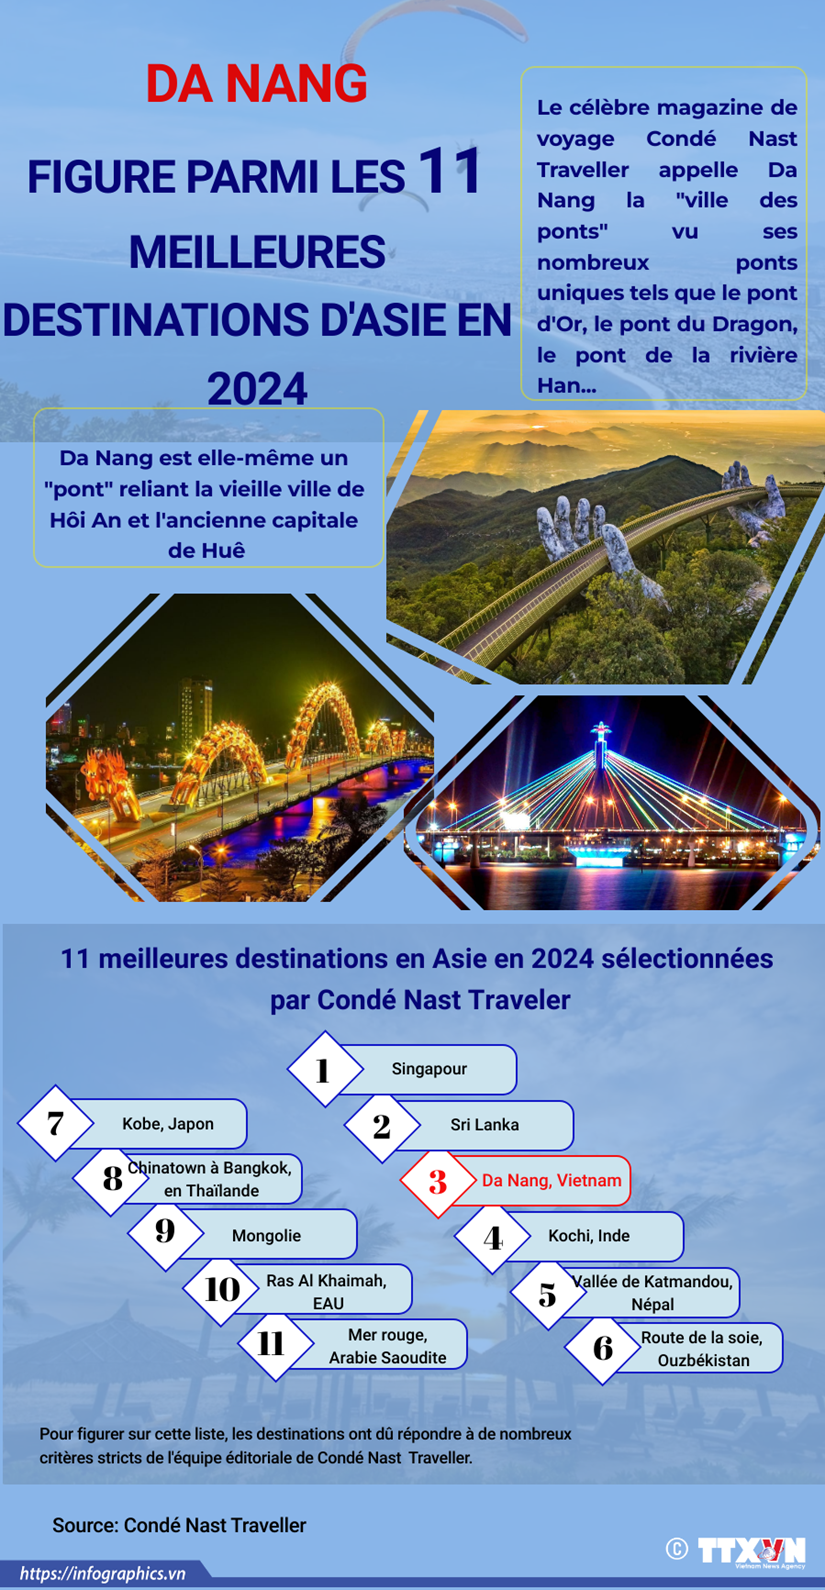 Da Nang parmi les 11 meilleures destinations d'Asie en 2024 hinh anh 1